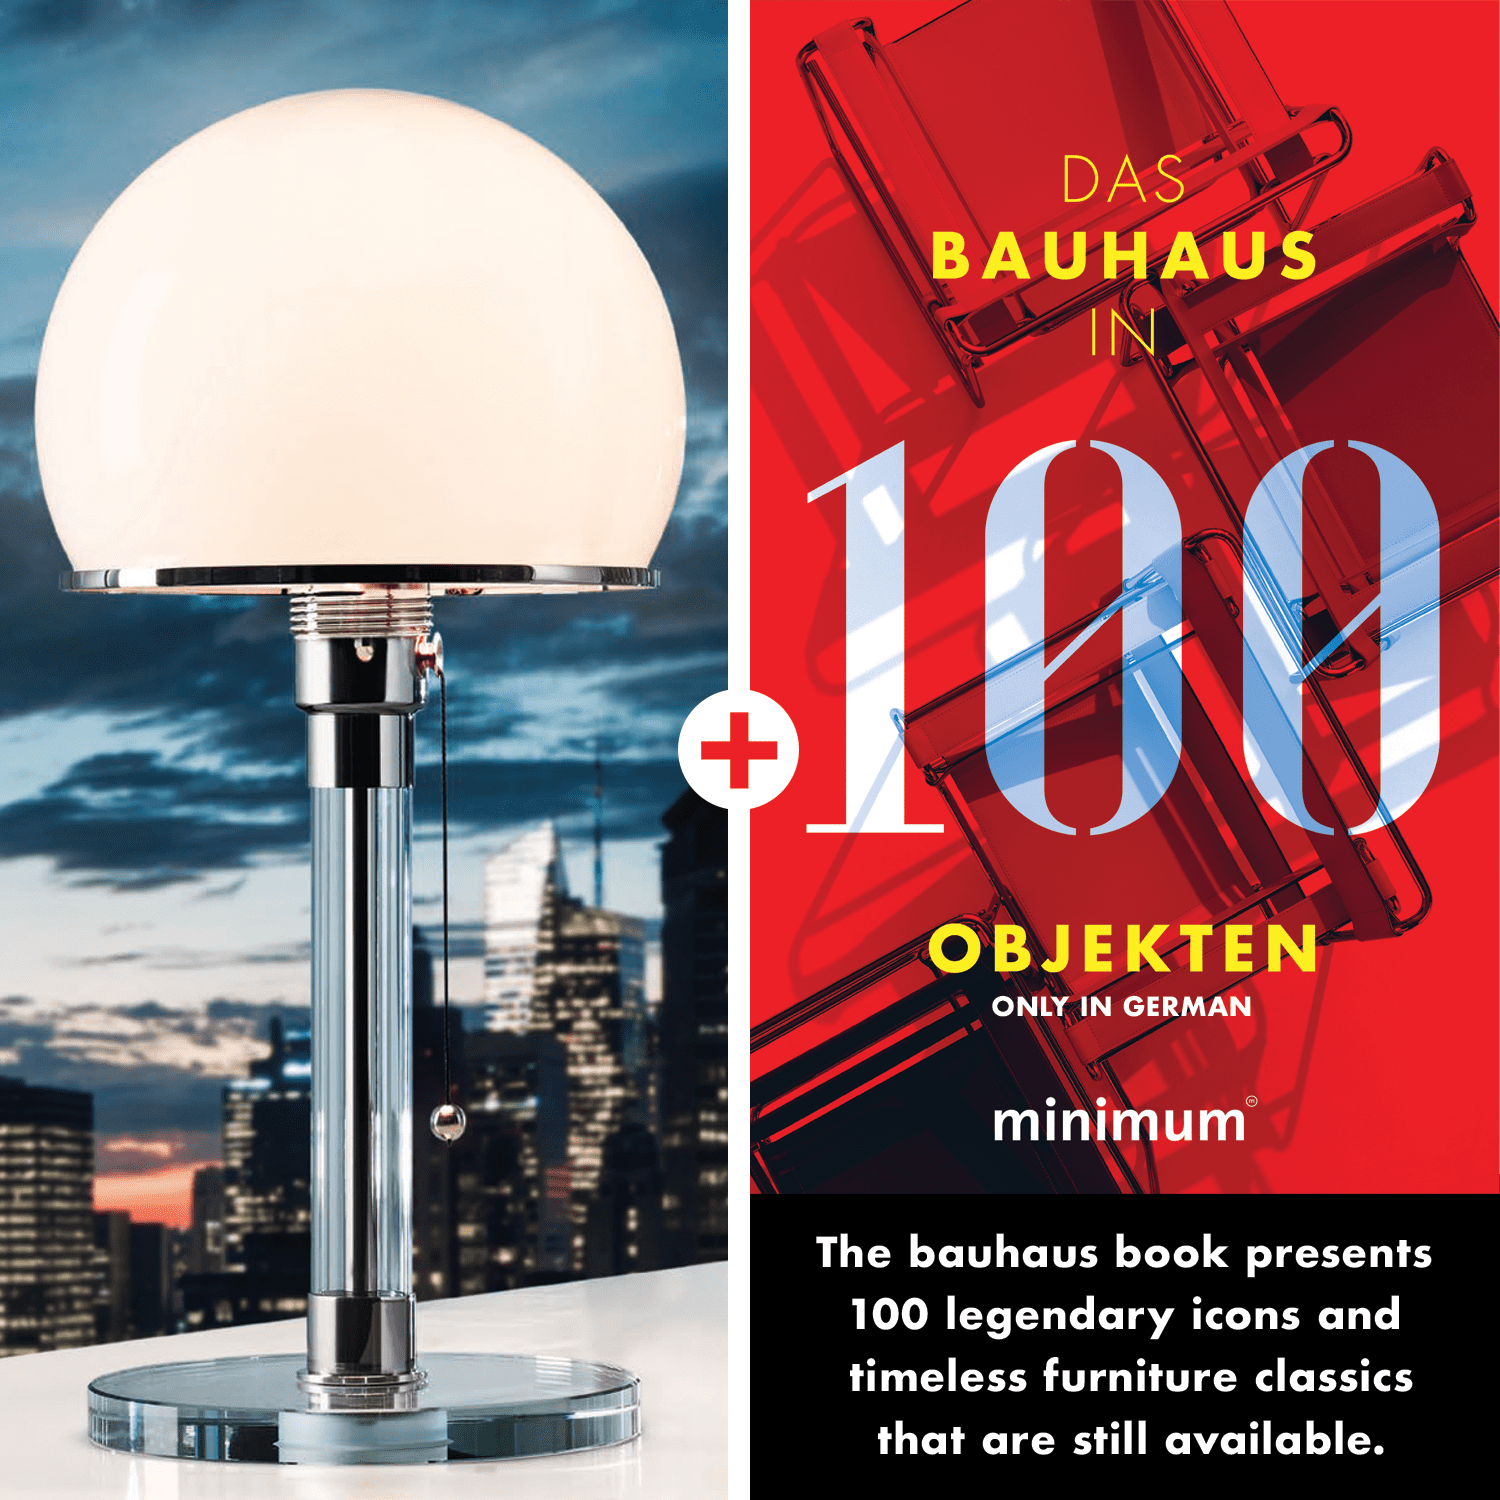 εικόνα του Wagenfeld Lamp WG 24 + Bauhaus in 100 Objects